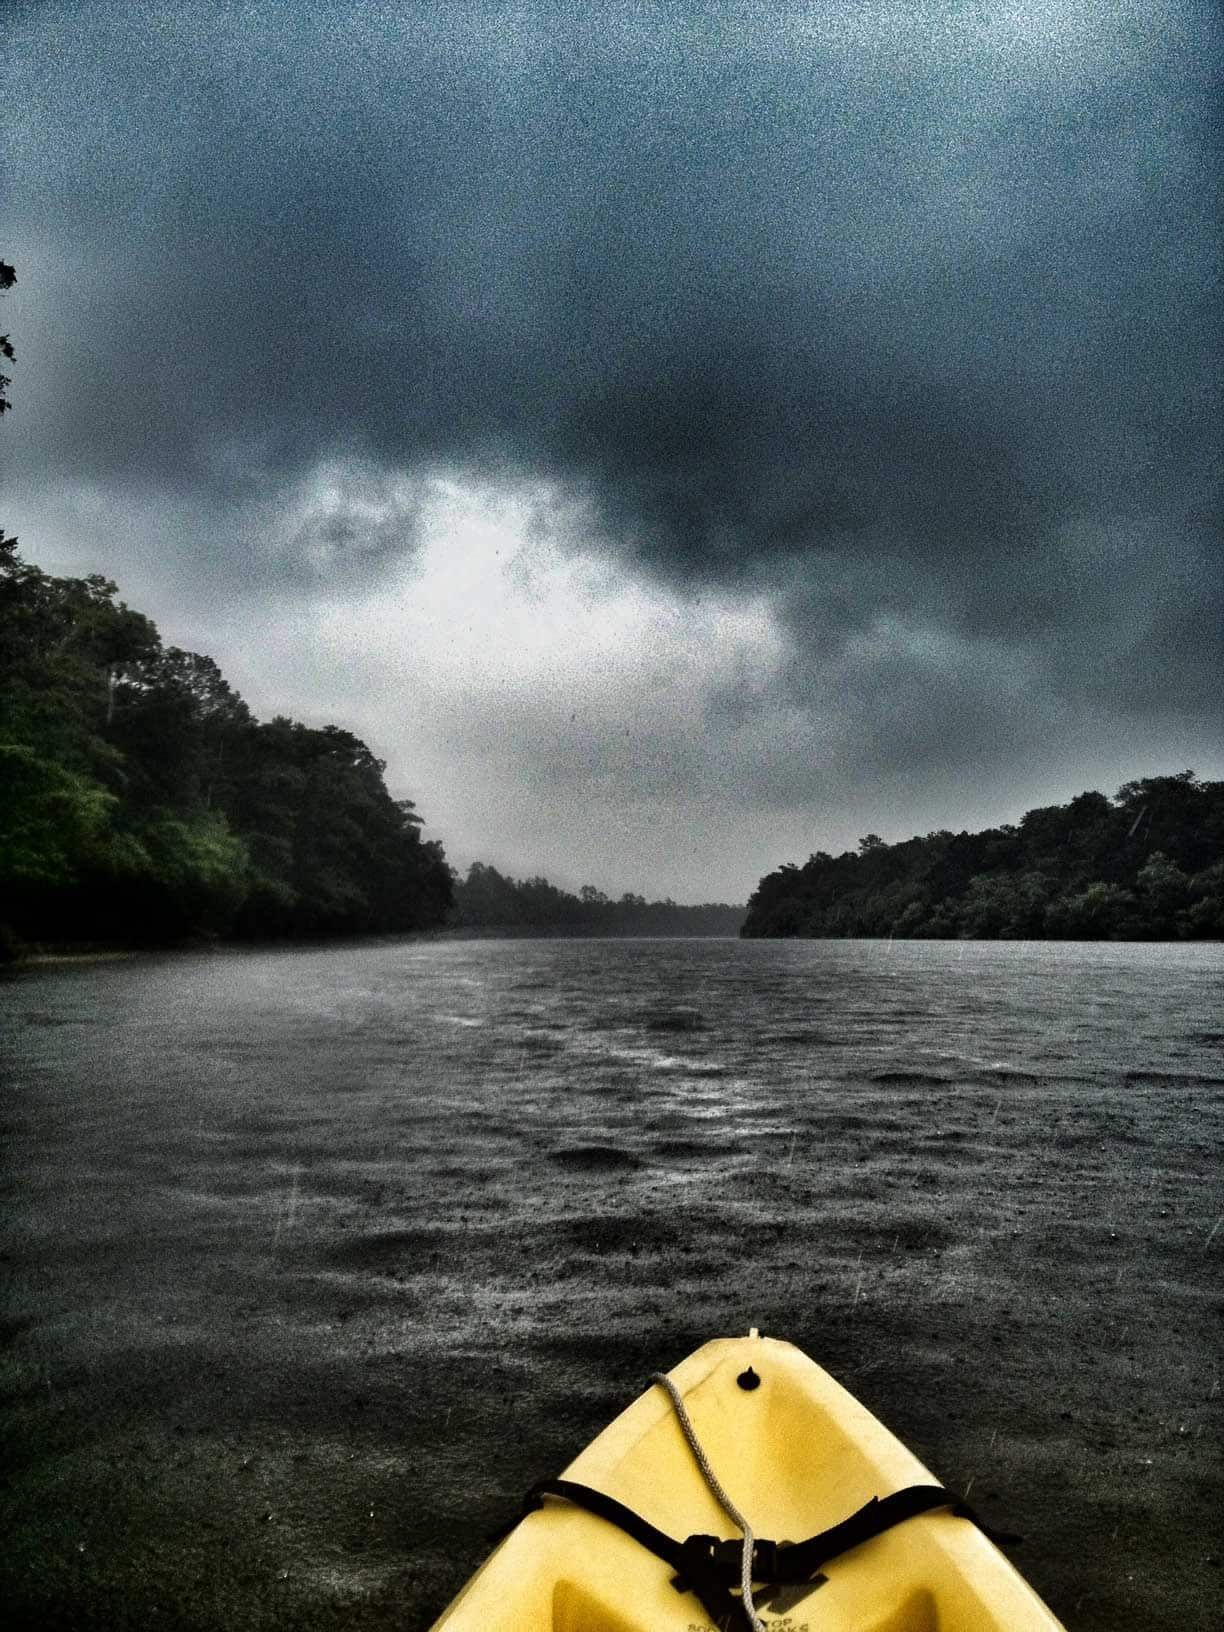 _images/Kayaking_in_rain_on_Suwannee_River1-1.jpg